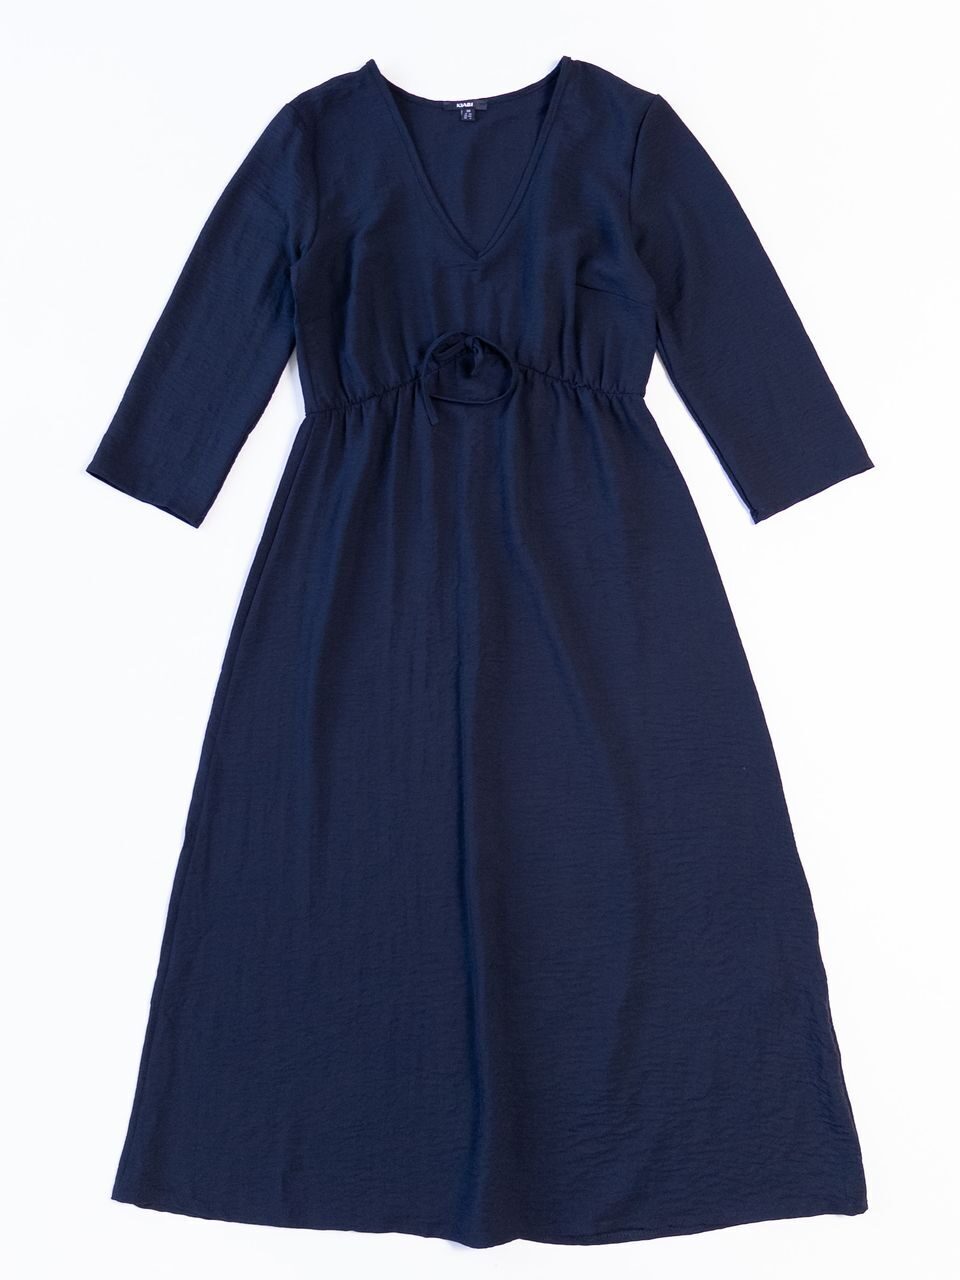 Платье легкое с резинкой с талии цвет синий размер EUR 38 (rus 44-46) KIABI